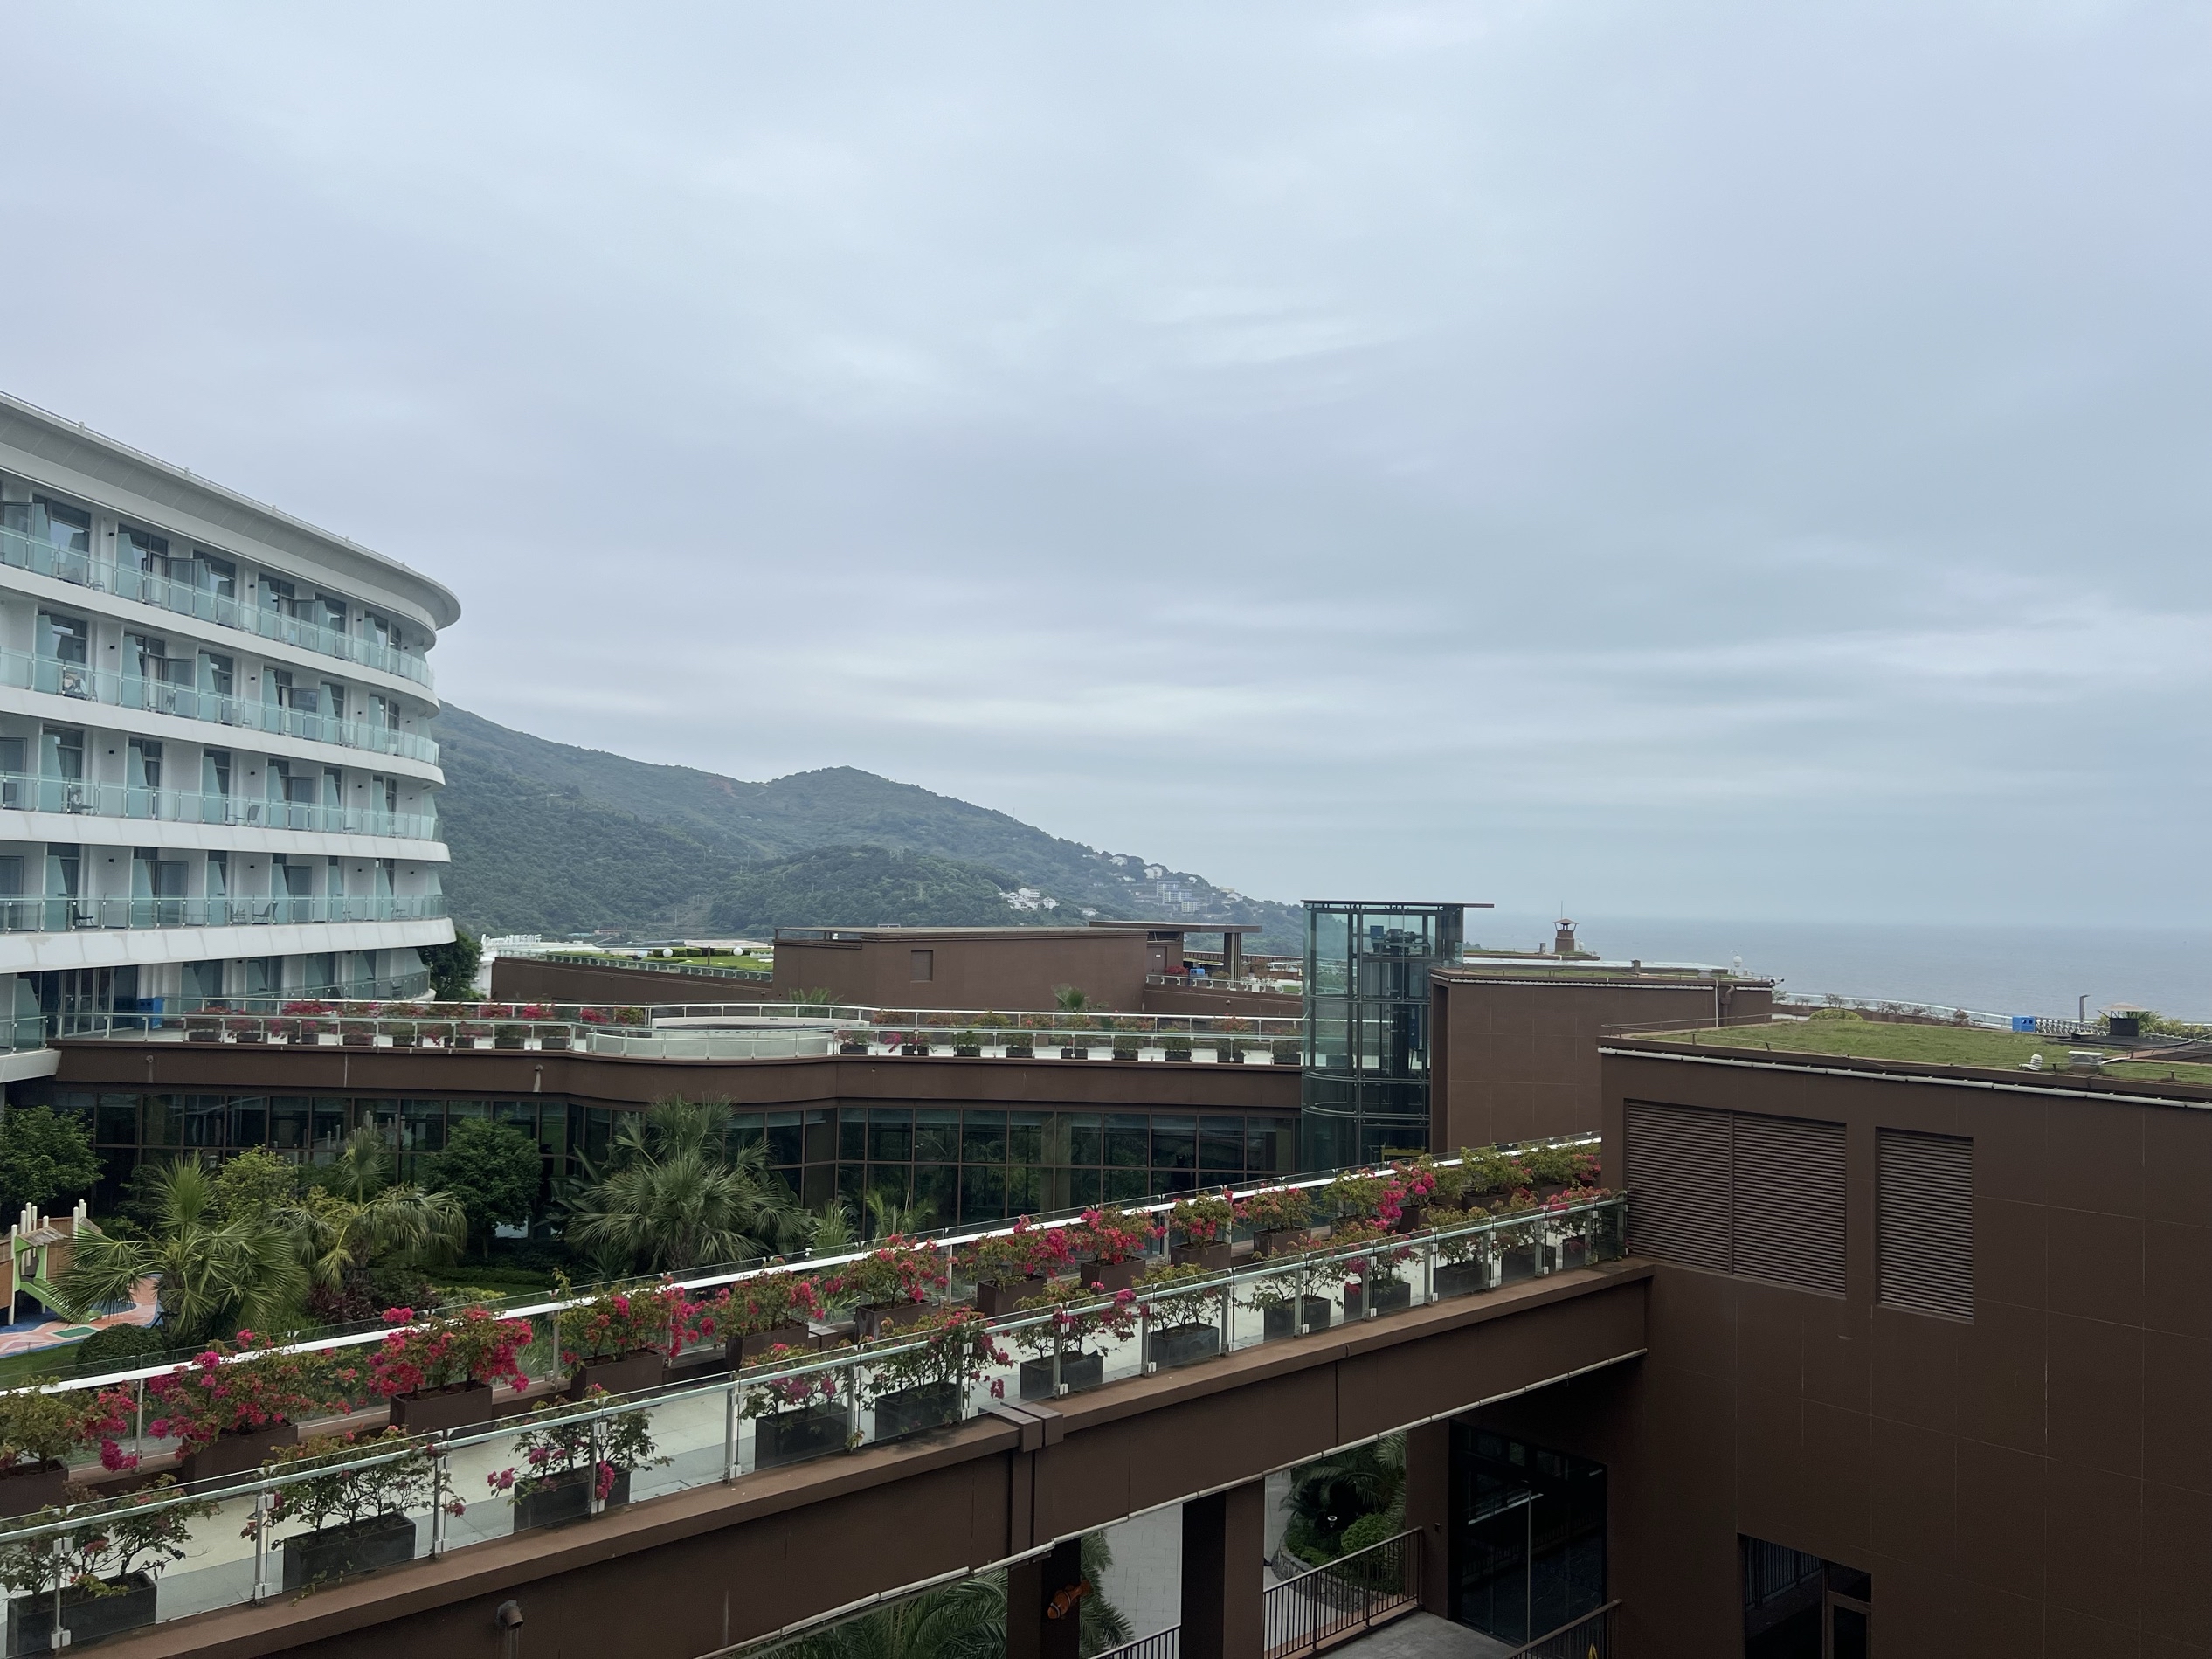 温州苍南的海景酒店，设计的挺有度假风格的，离海滩很近，沙滩和海景没有达到预期，水上活动挺丰富弥补了不